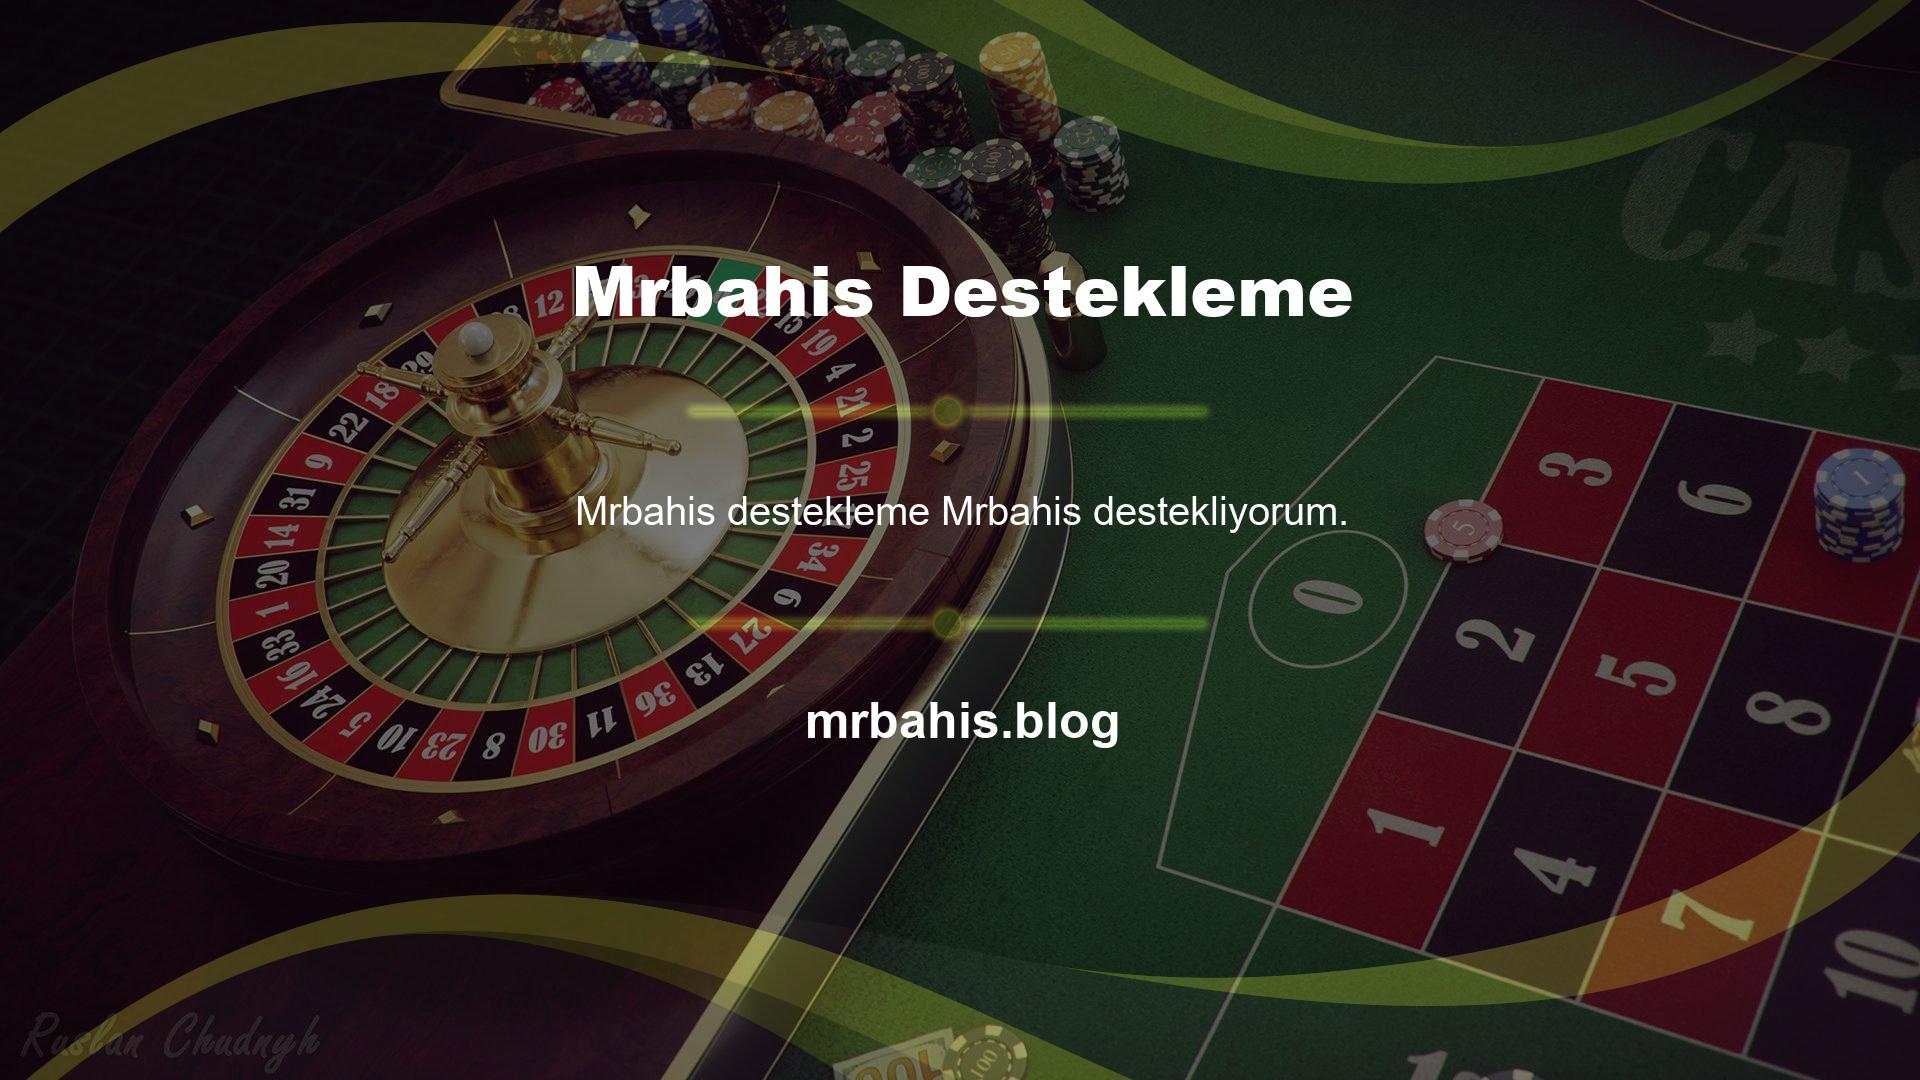 Birçok kişi casino oyunları ve slot makinelerine yönelik popüler Mrbahis web sitesine üye olmak ve daha iyi fırsatlar elde etmek istiyor